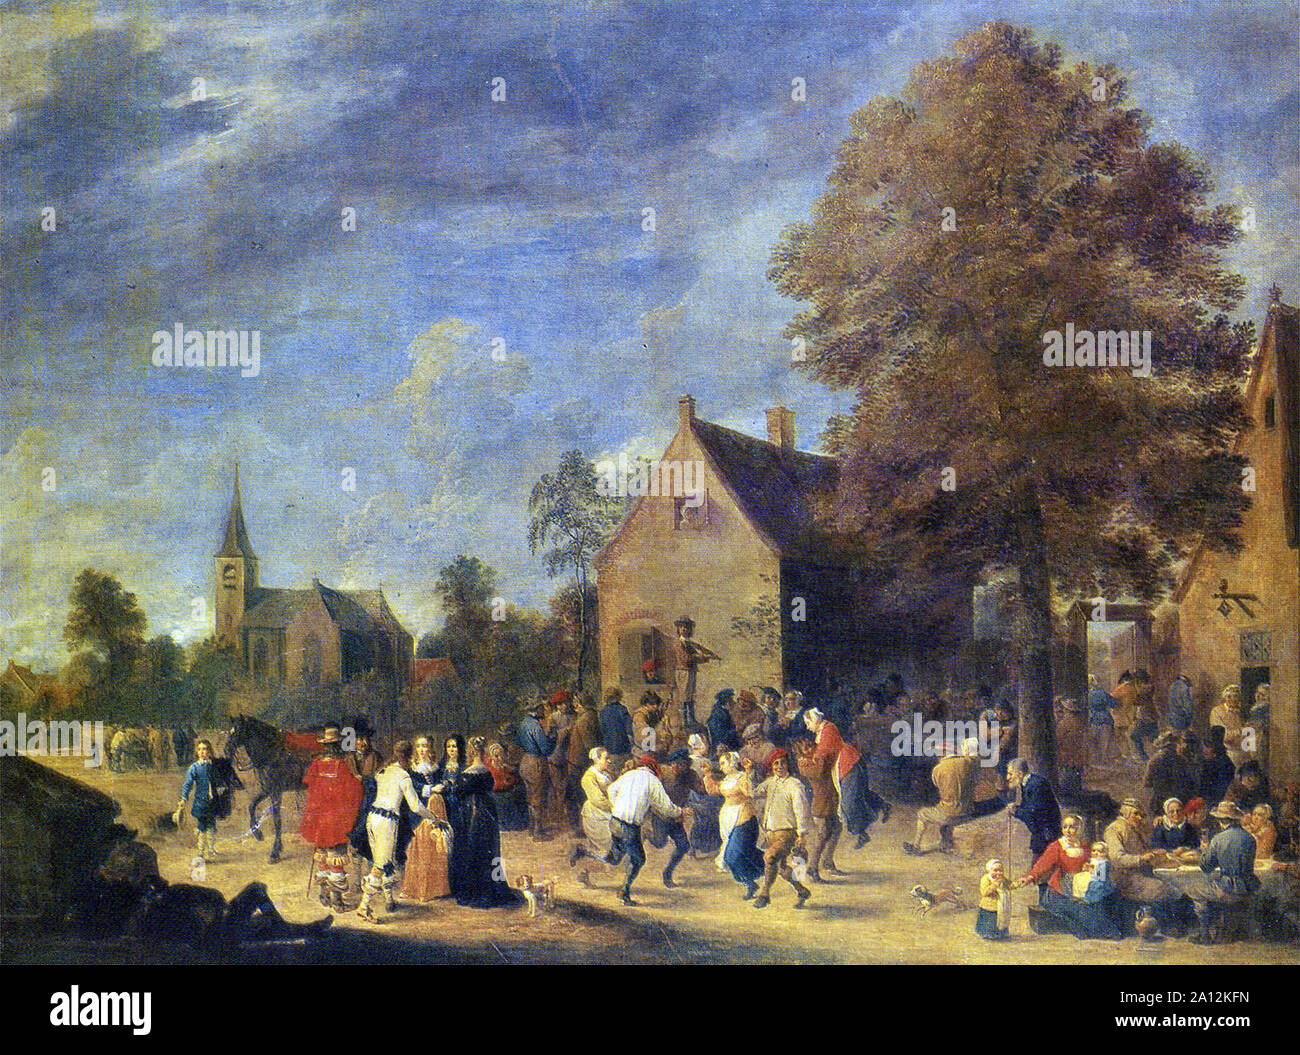 Gemälde von David Teniers der jüngere 1610-1690-Village Festival 1648 Öl auf Leinwand Stockfoto